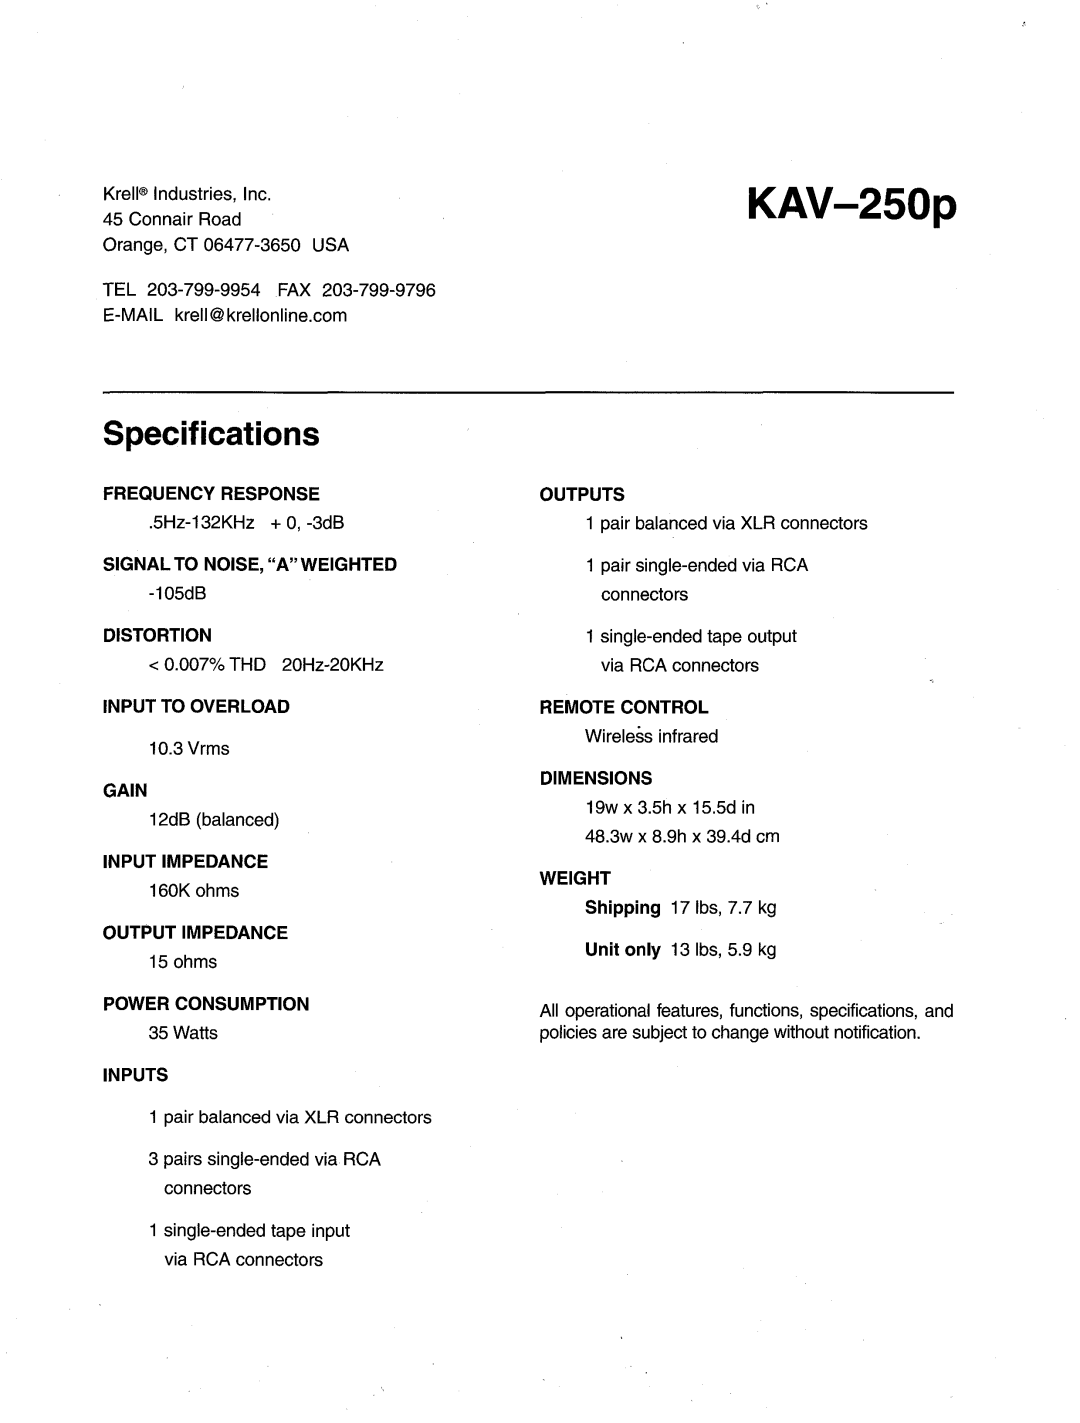 Krell Industries KAV-250p manual Specifications 